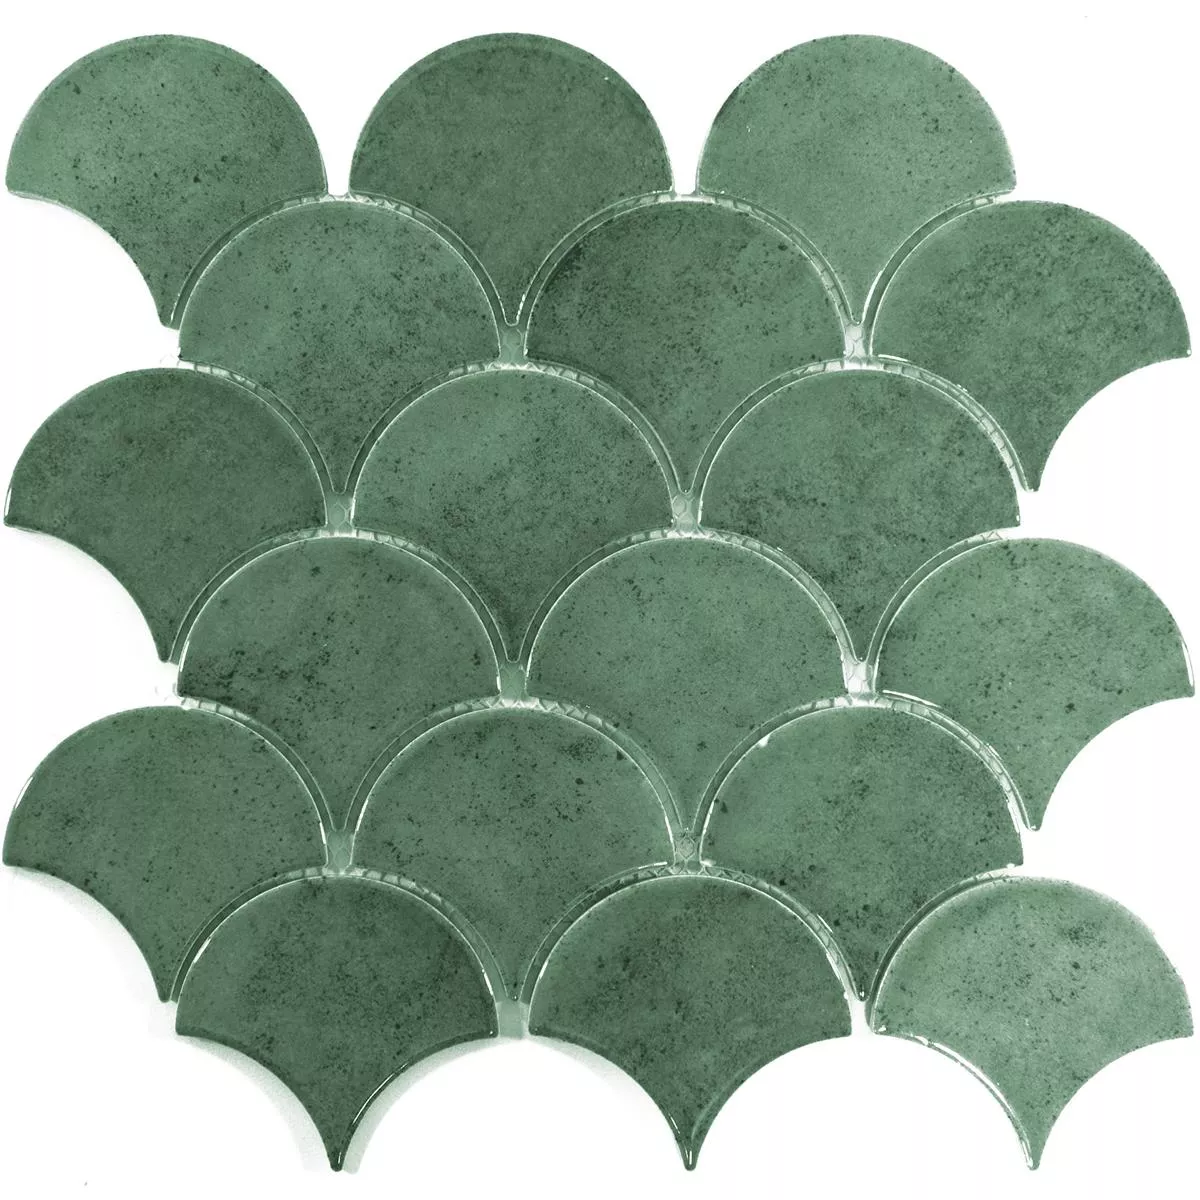 Ceramic Mosaic Tiles Eldertown Fächer Dark Green